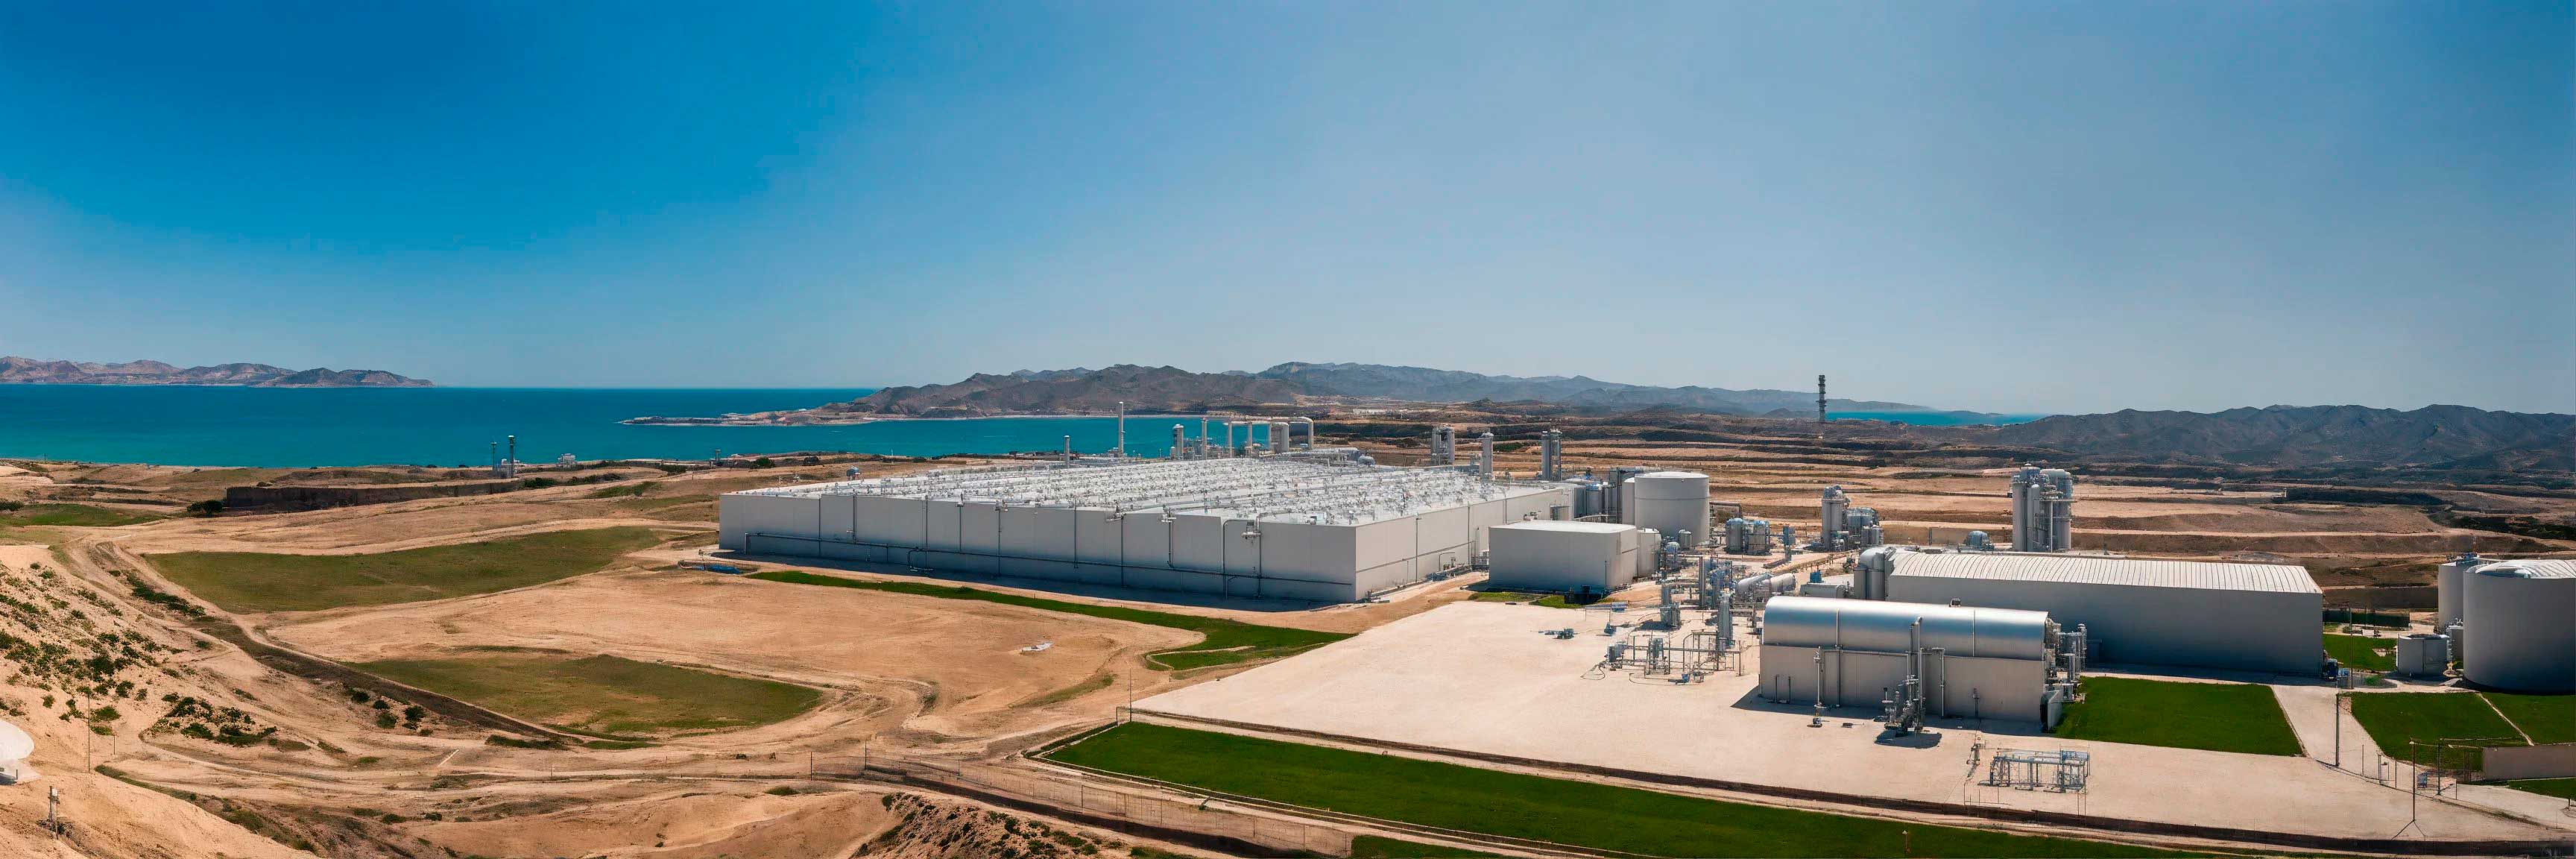 desalination-plant-in-Sagunto.jpg